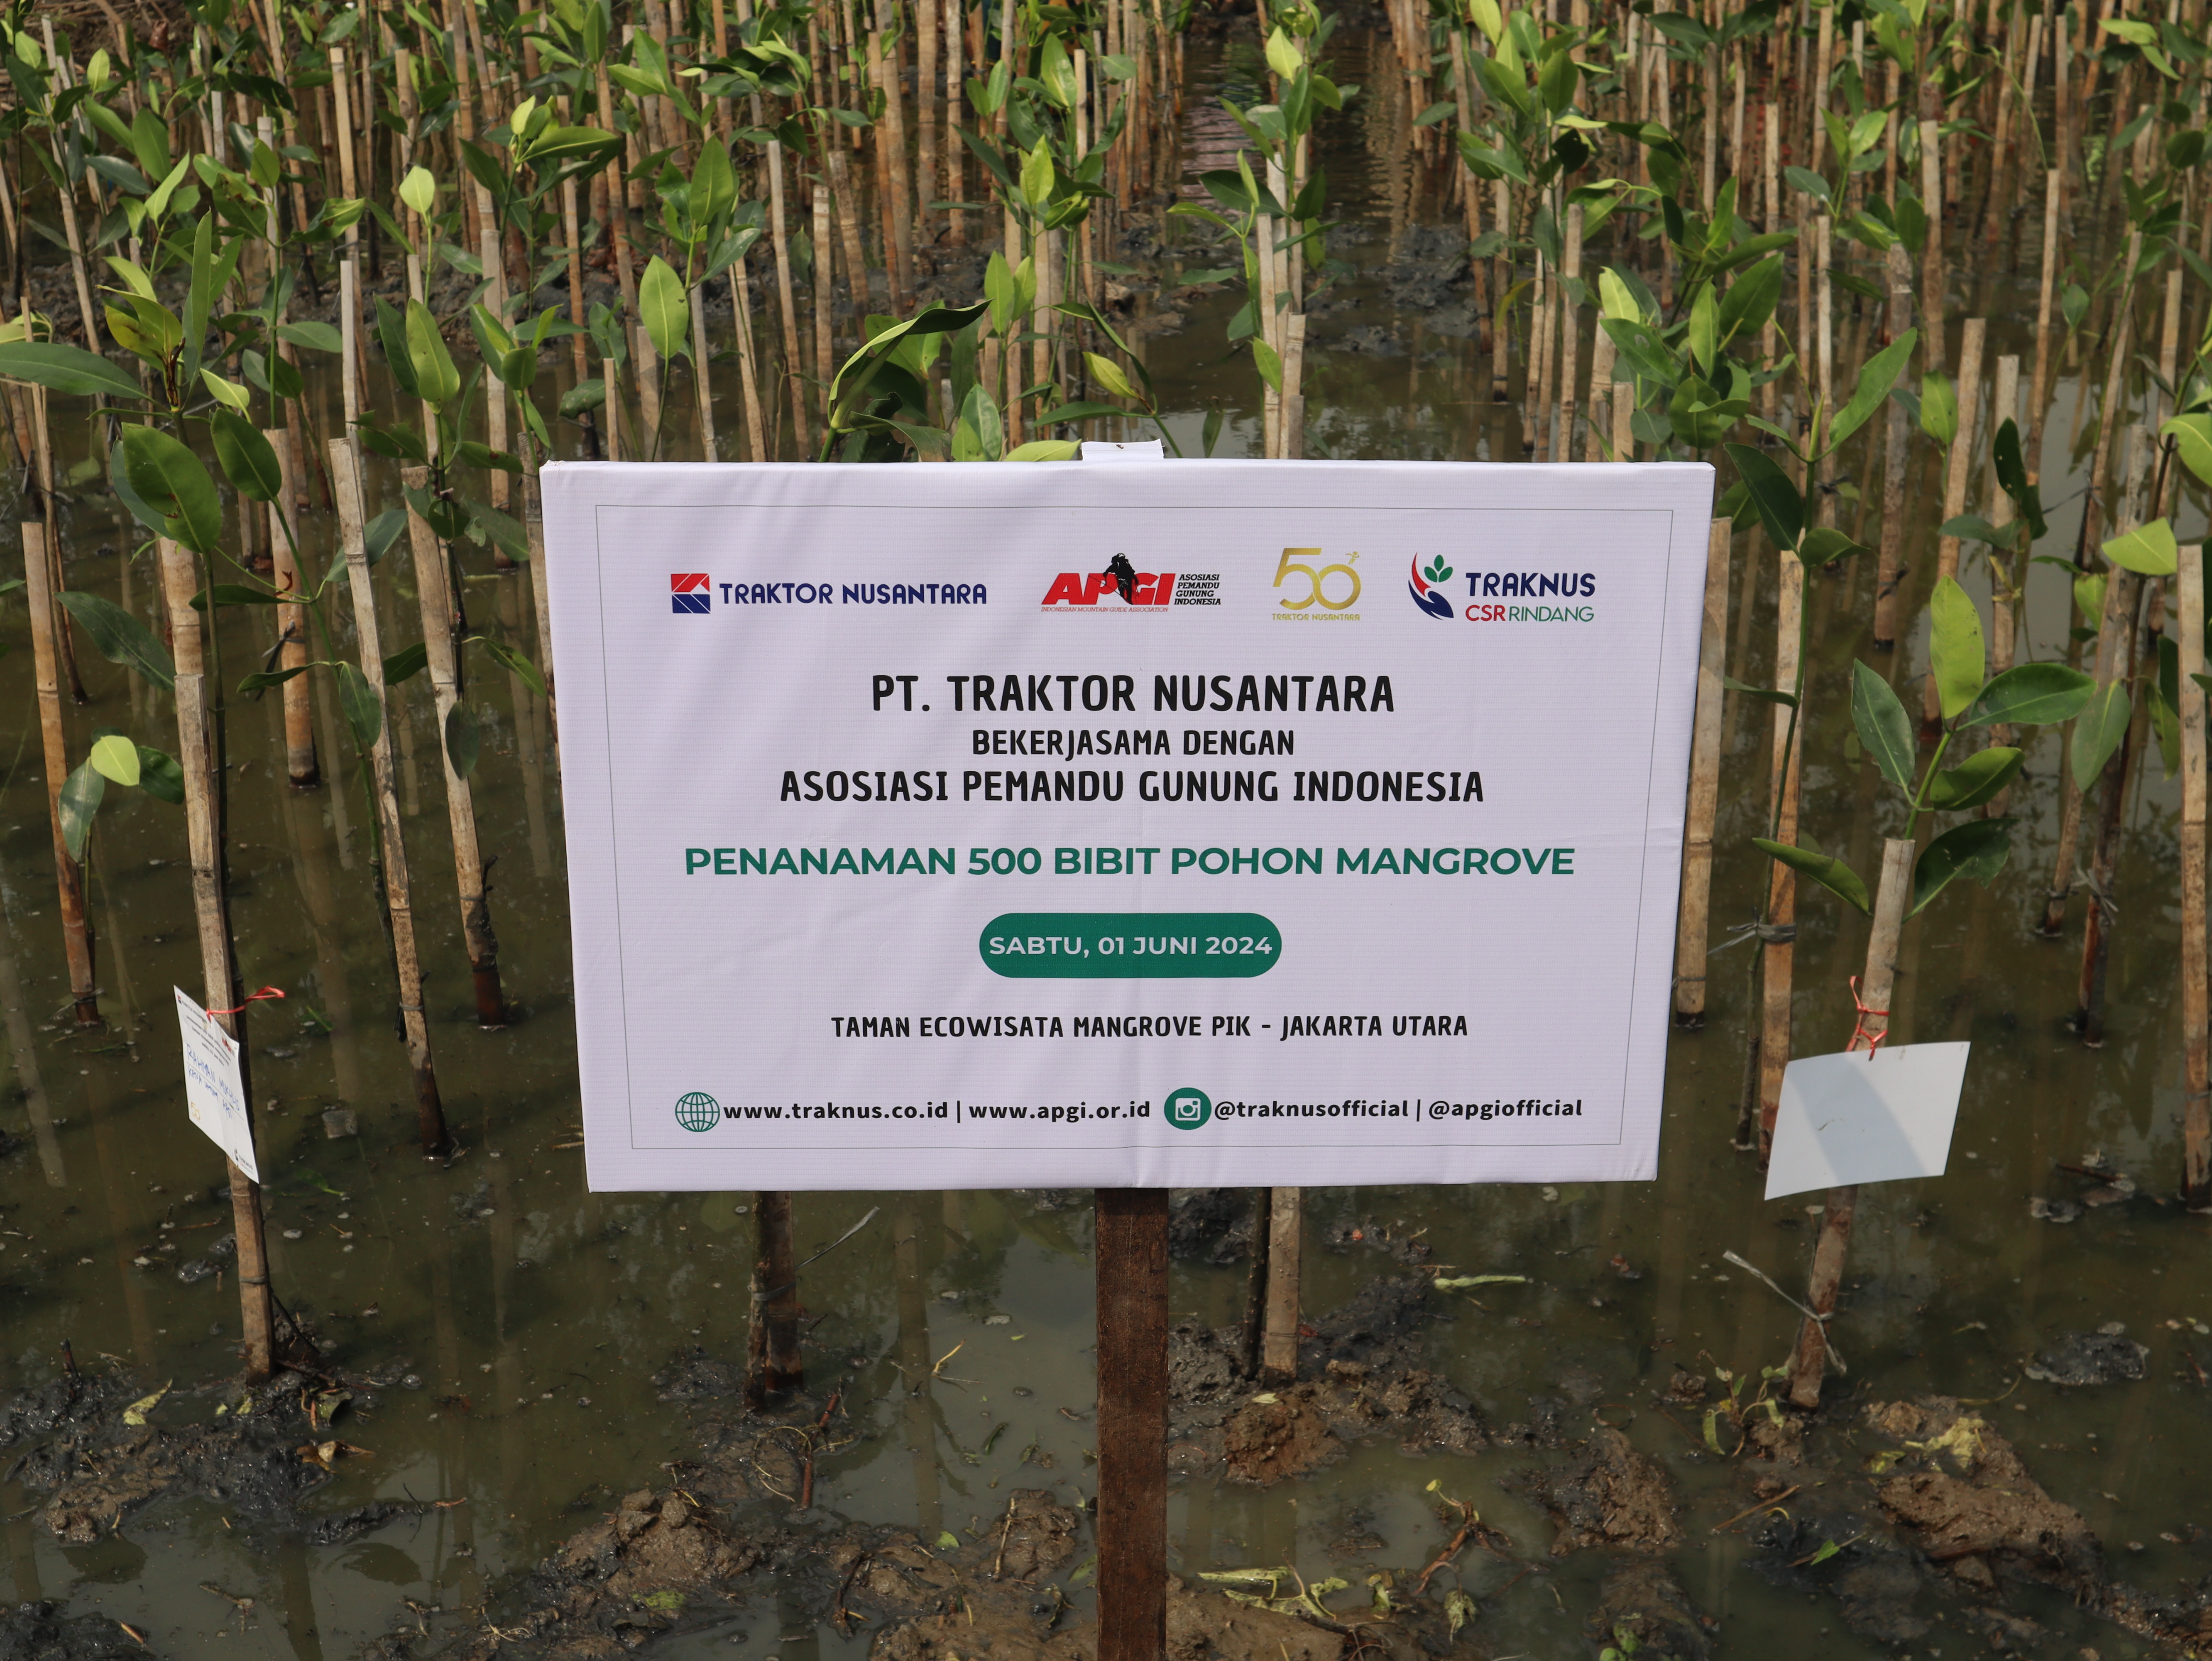 5. knews edisi w2 juni 2024 traknus tanam 500 bibit mangrove dukung hari lingkungan hidup sedunia